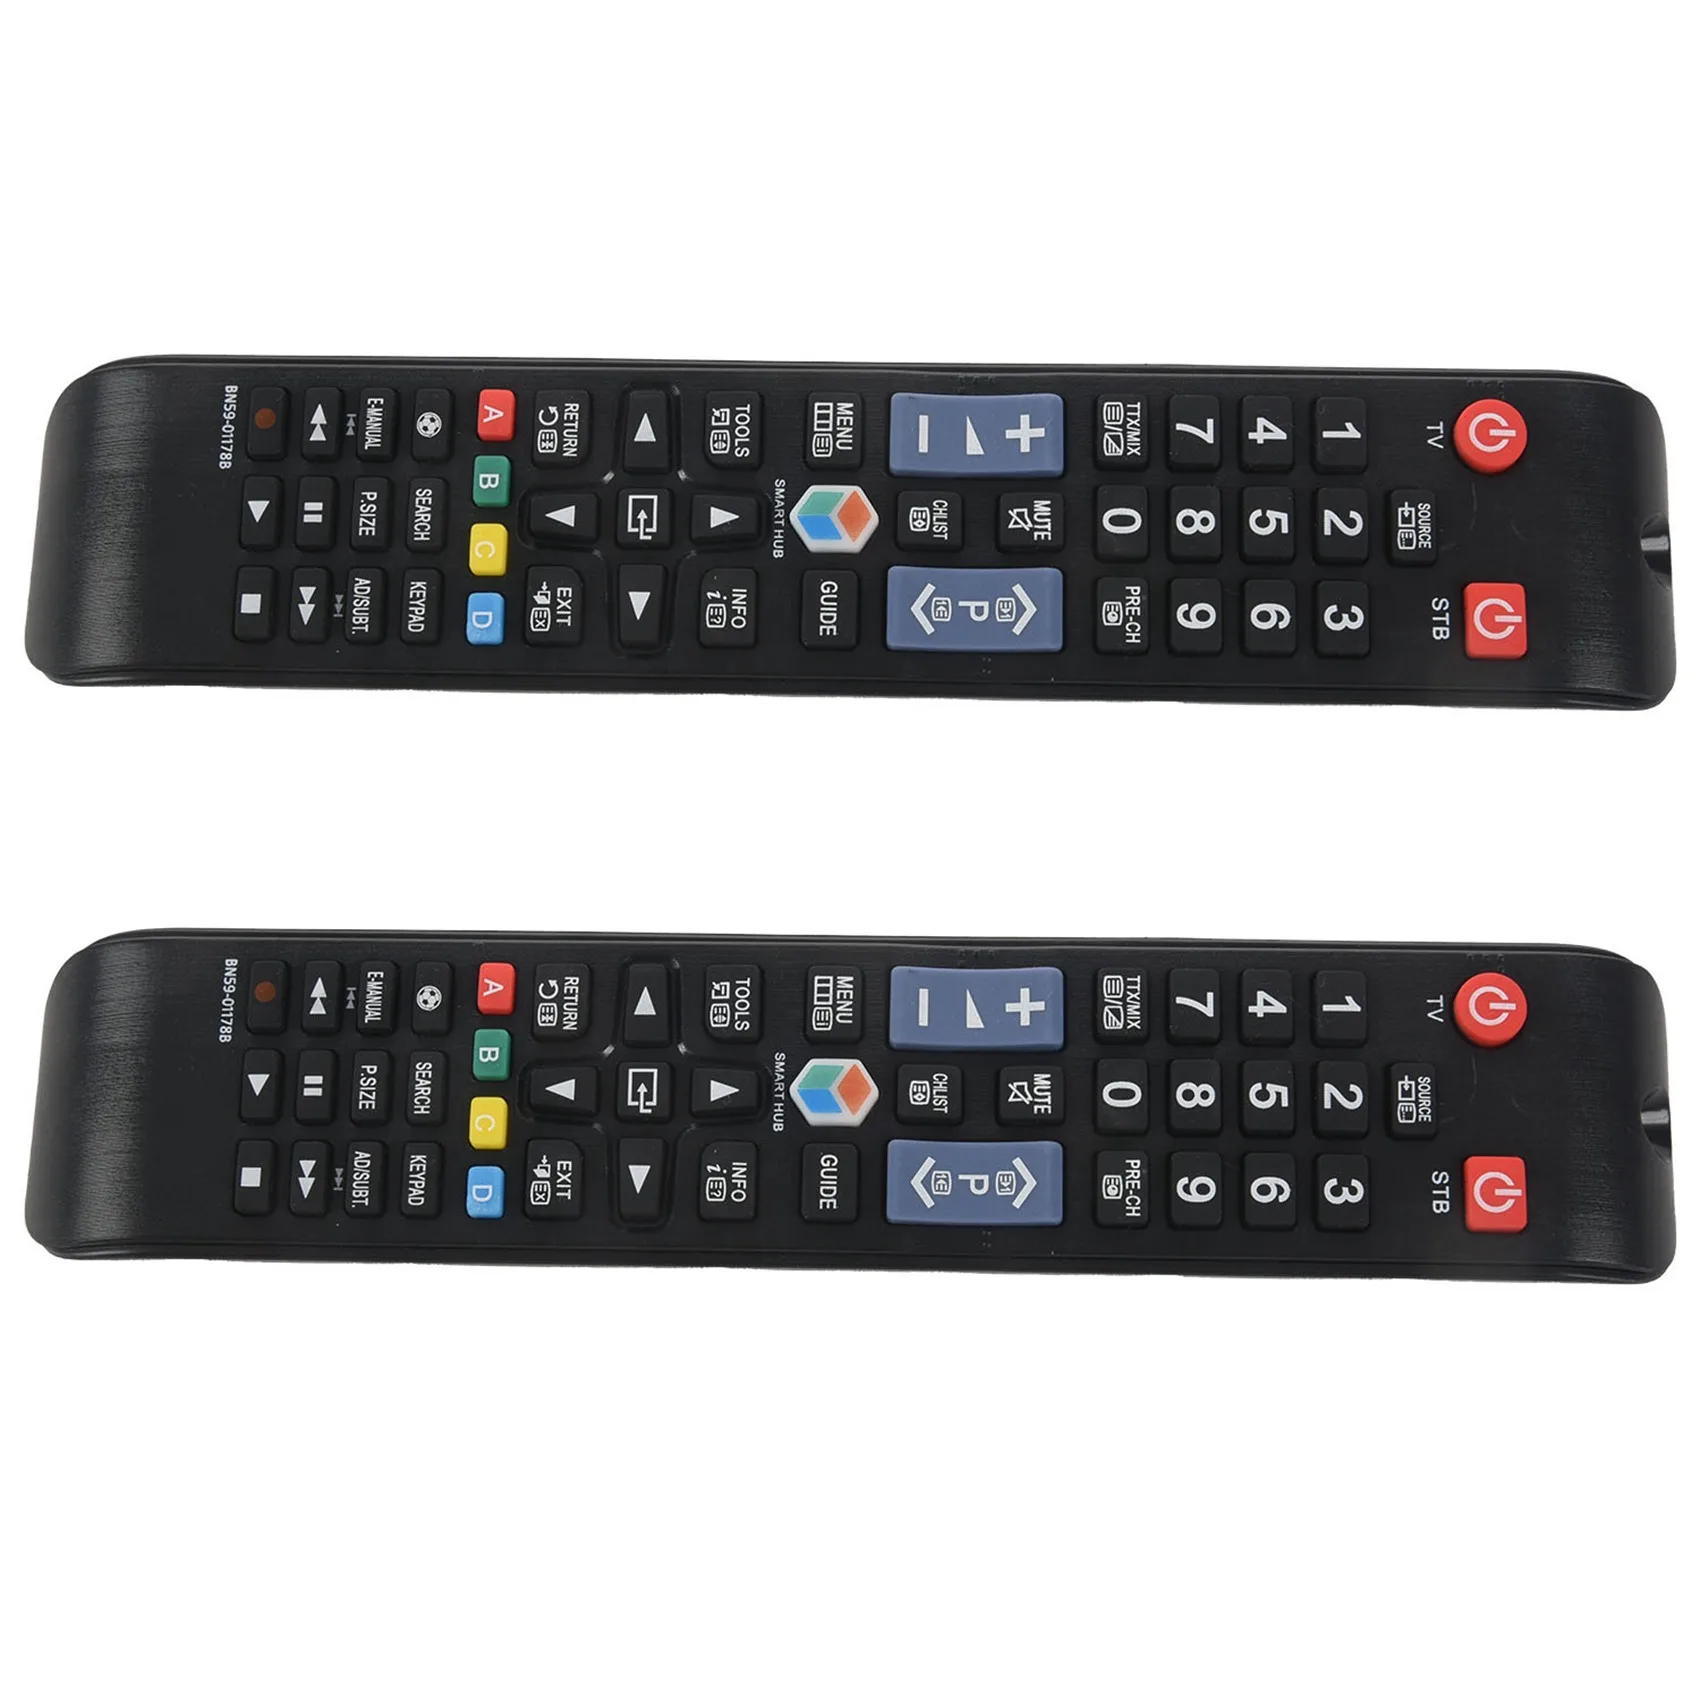 

2X New remote control For Samsung SMART TV BN59-01178B UA55H6300AW UA60H6300AW UE32H5500 UE40H5570 UE55H6200